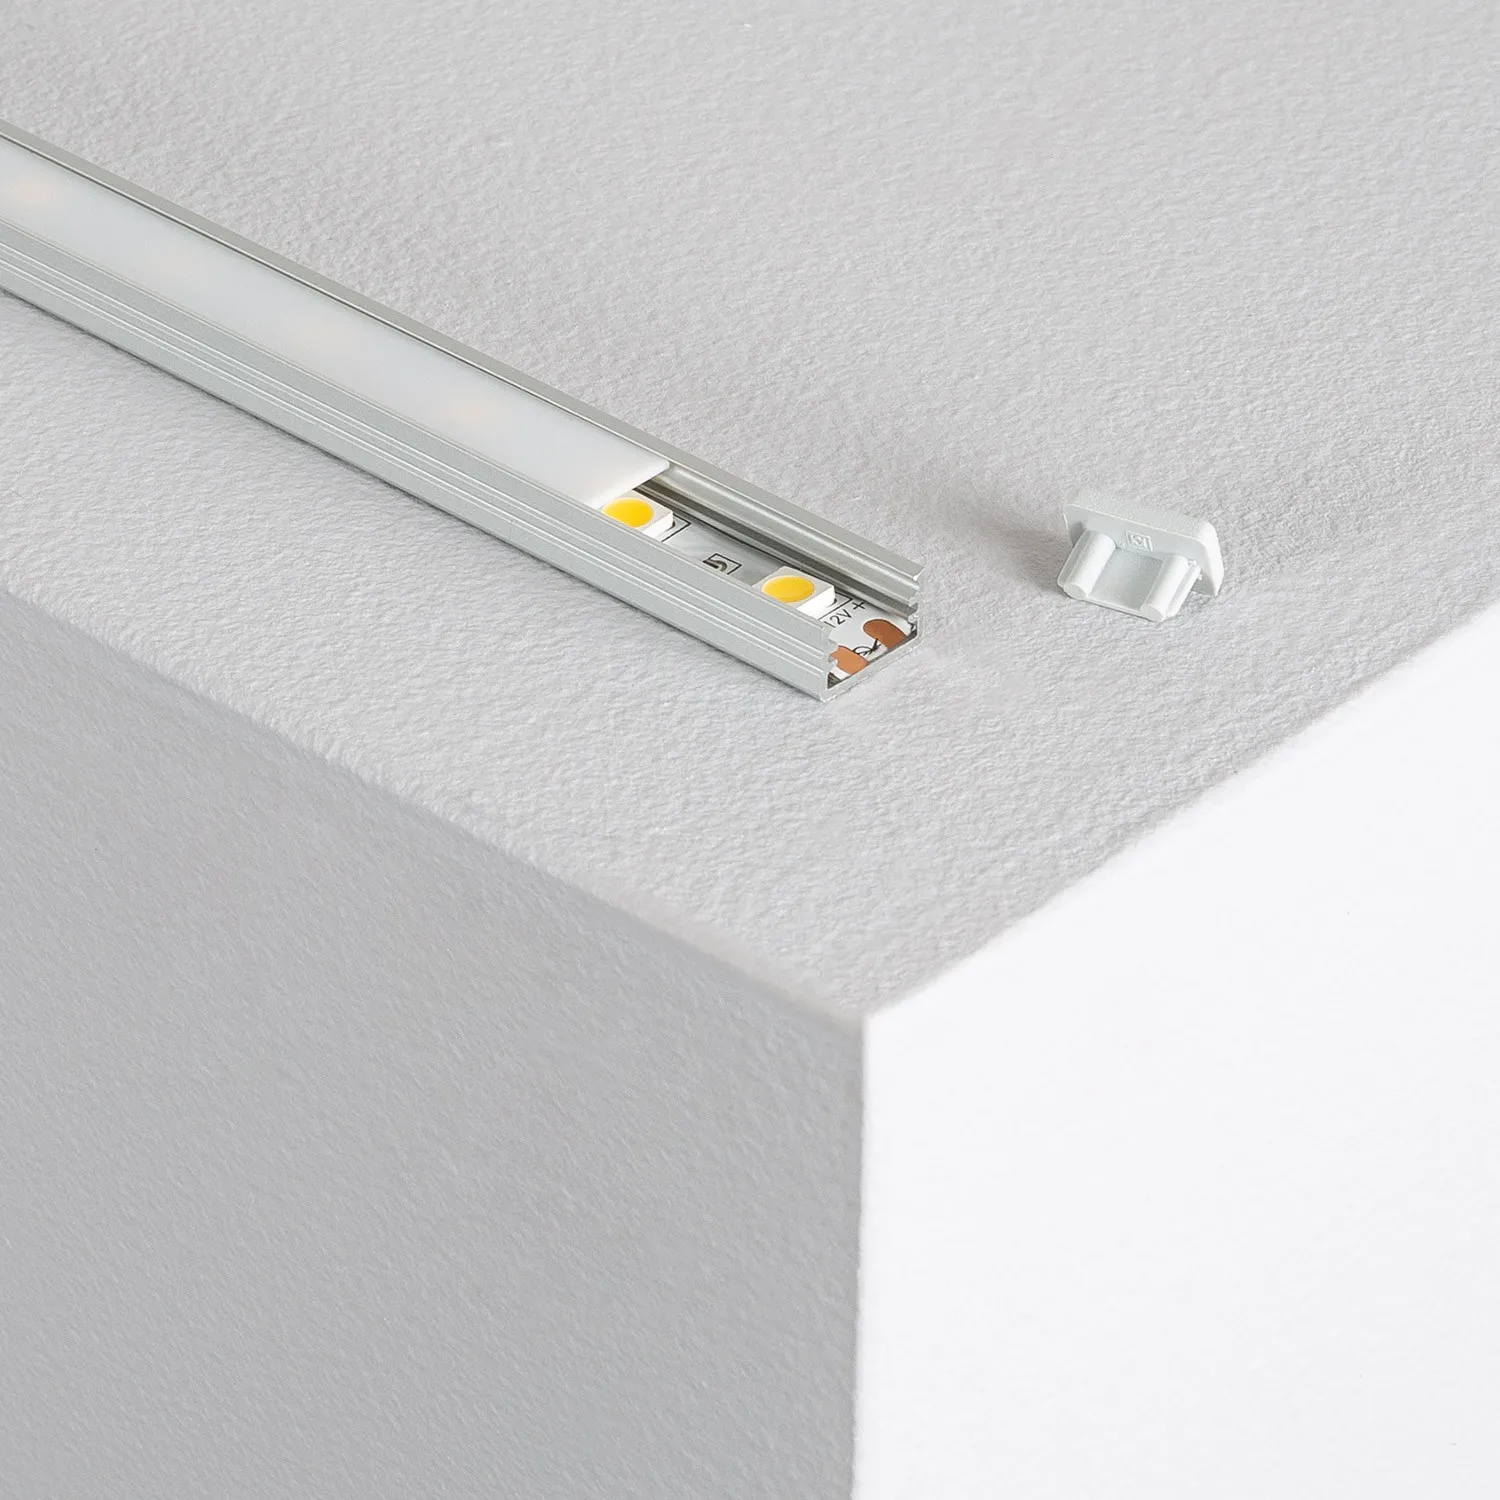 Aluminiumprofil mit Abdeckung für LED-Streifen bis 10mm